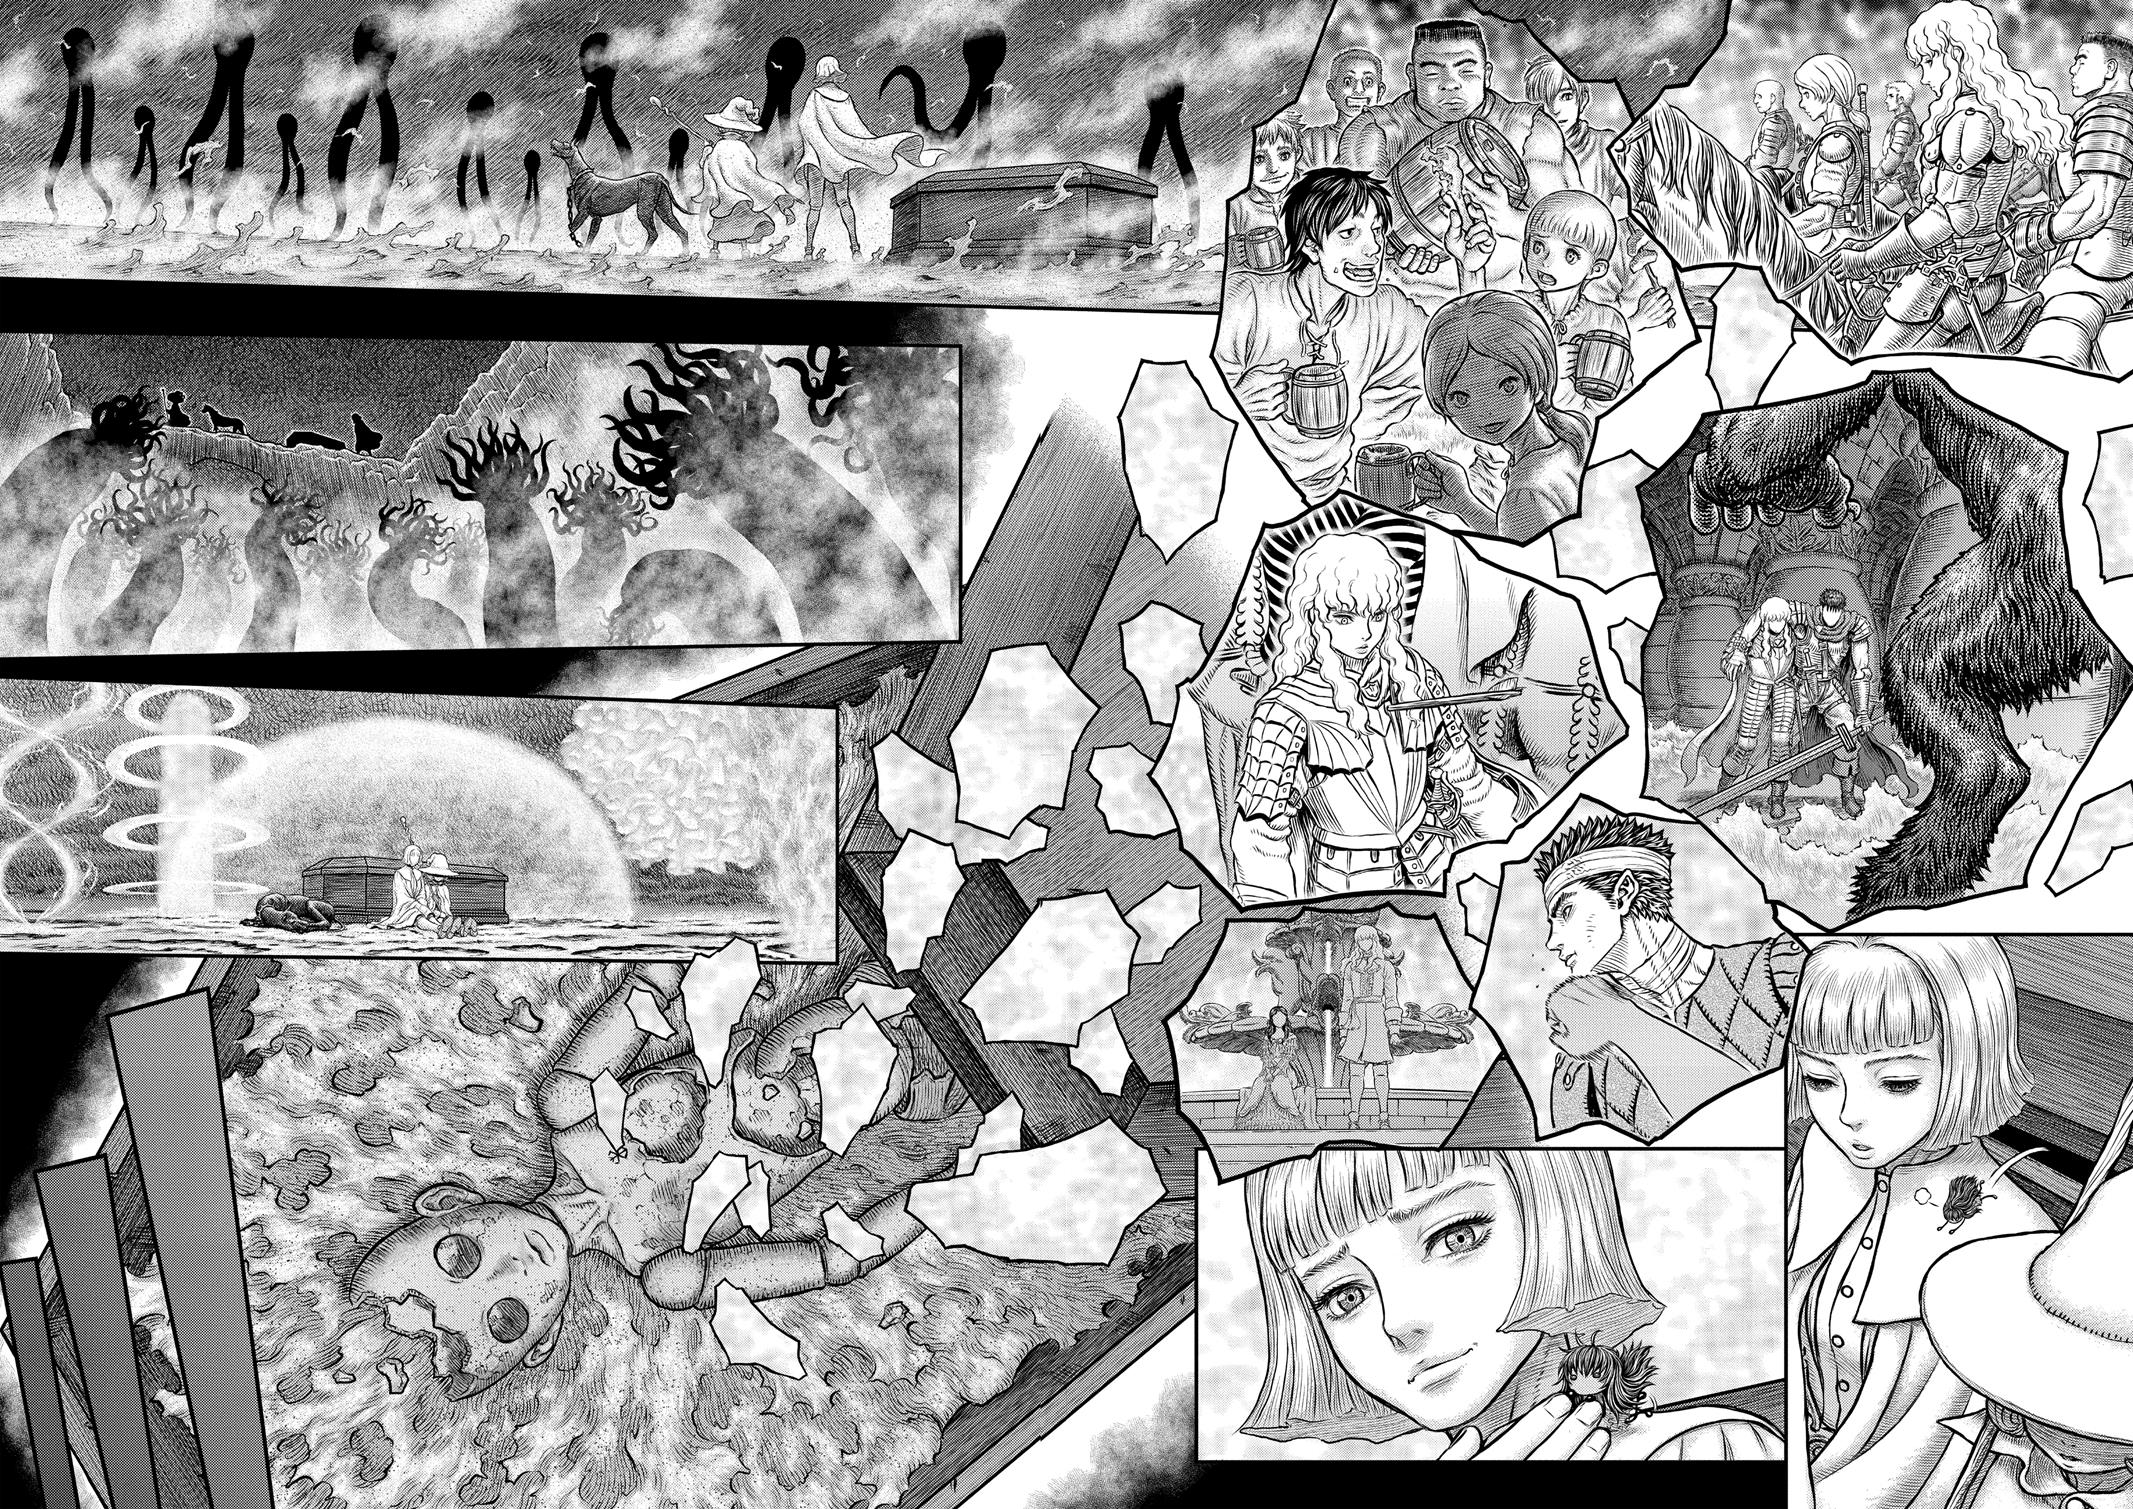 Berserk Manga Chapter 350 image 15